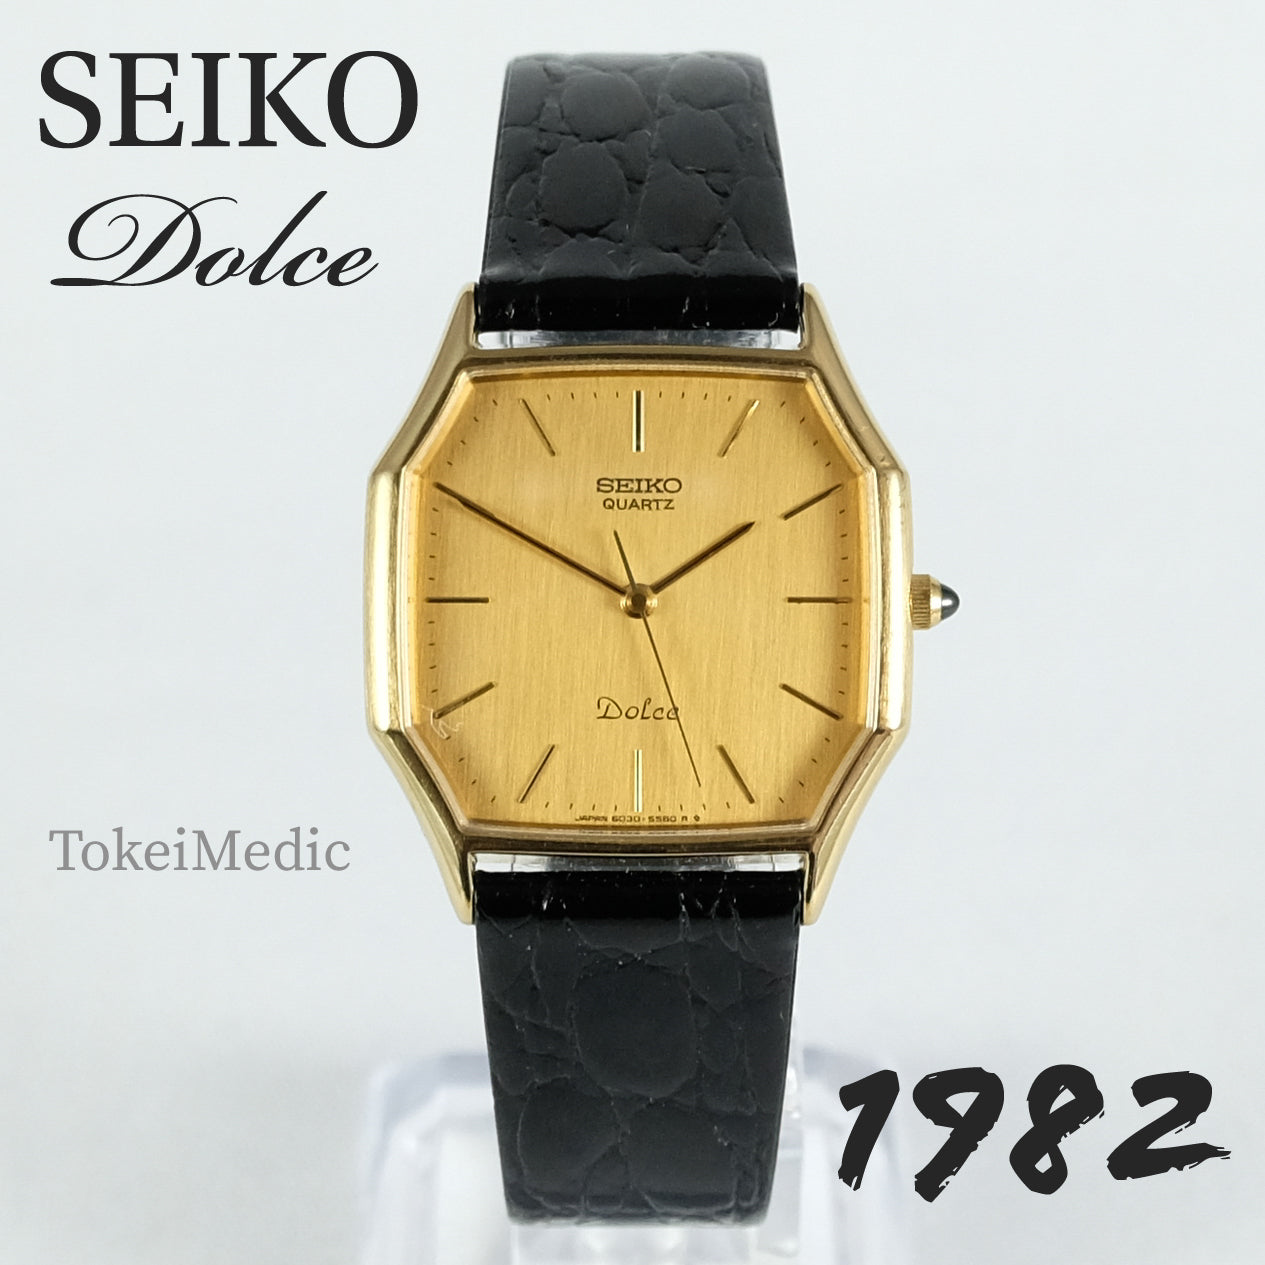 1982 Seiko Dolce 6030-5500